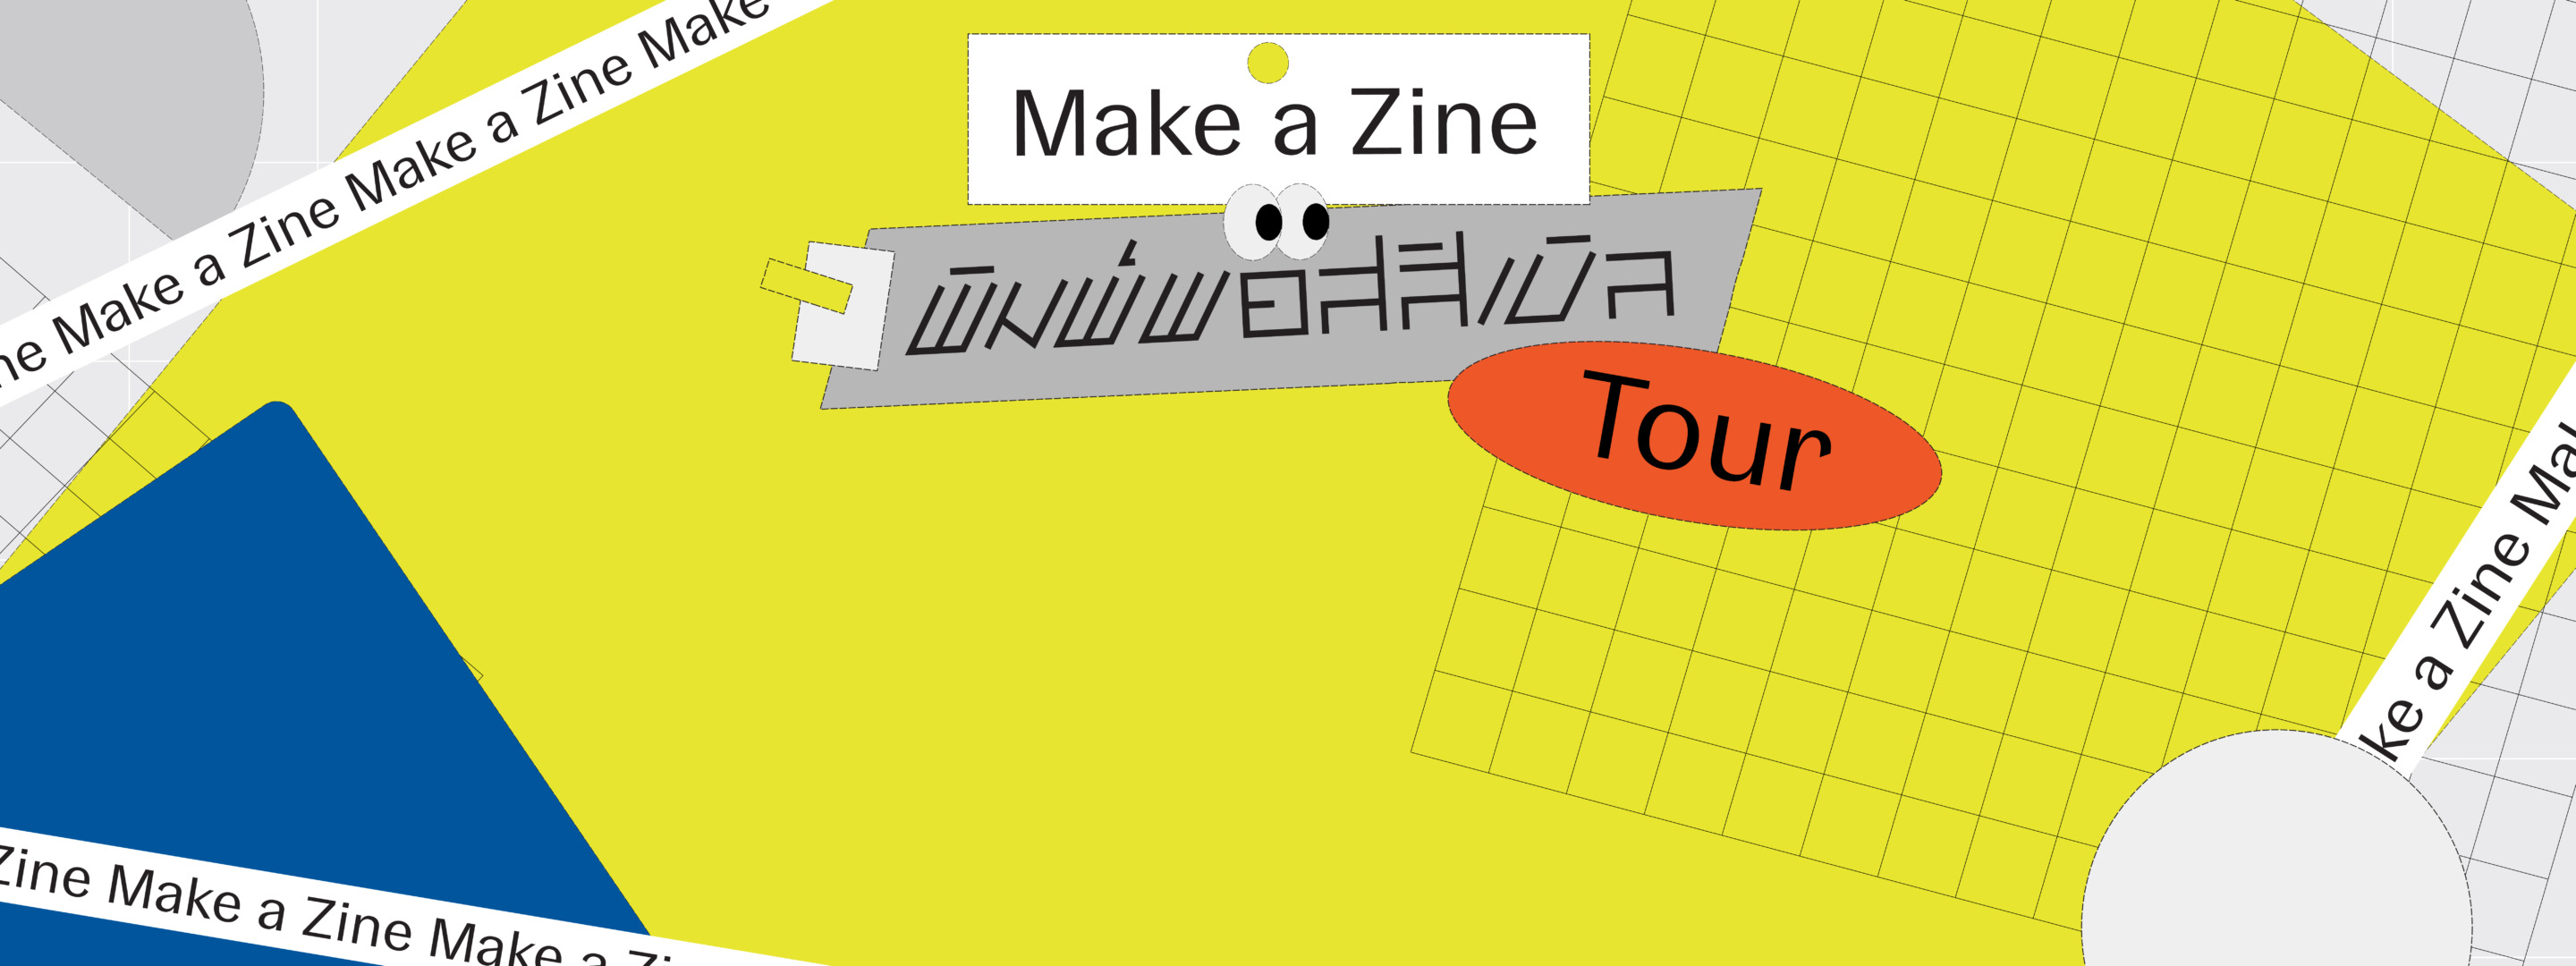 รับสมัครลูกทัวร์เดินเที่ยวเจริญกรุงกับ Make a Zine : พิมพ์ พอสสิเบิล Tour